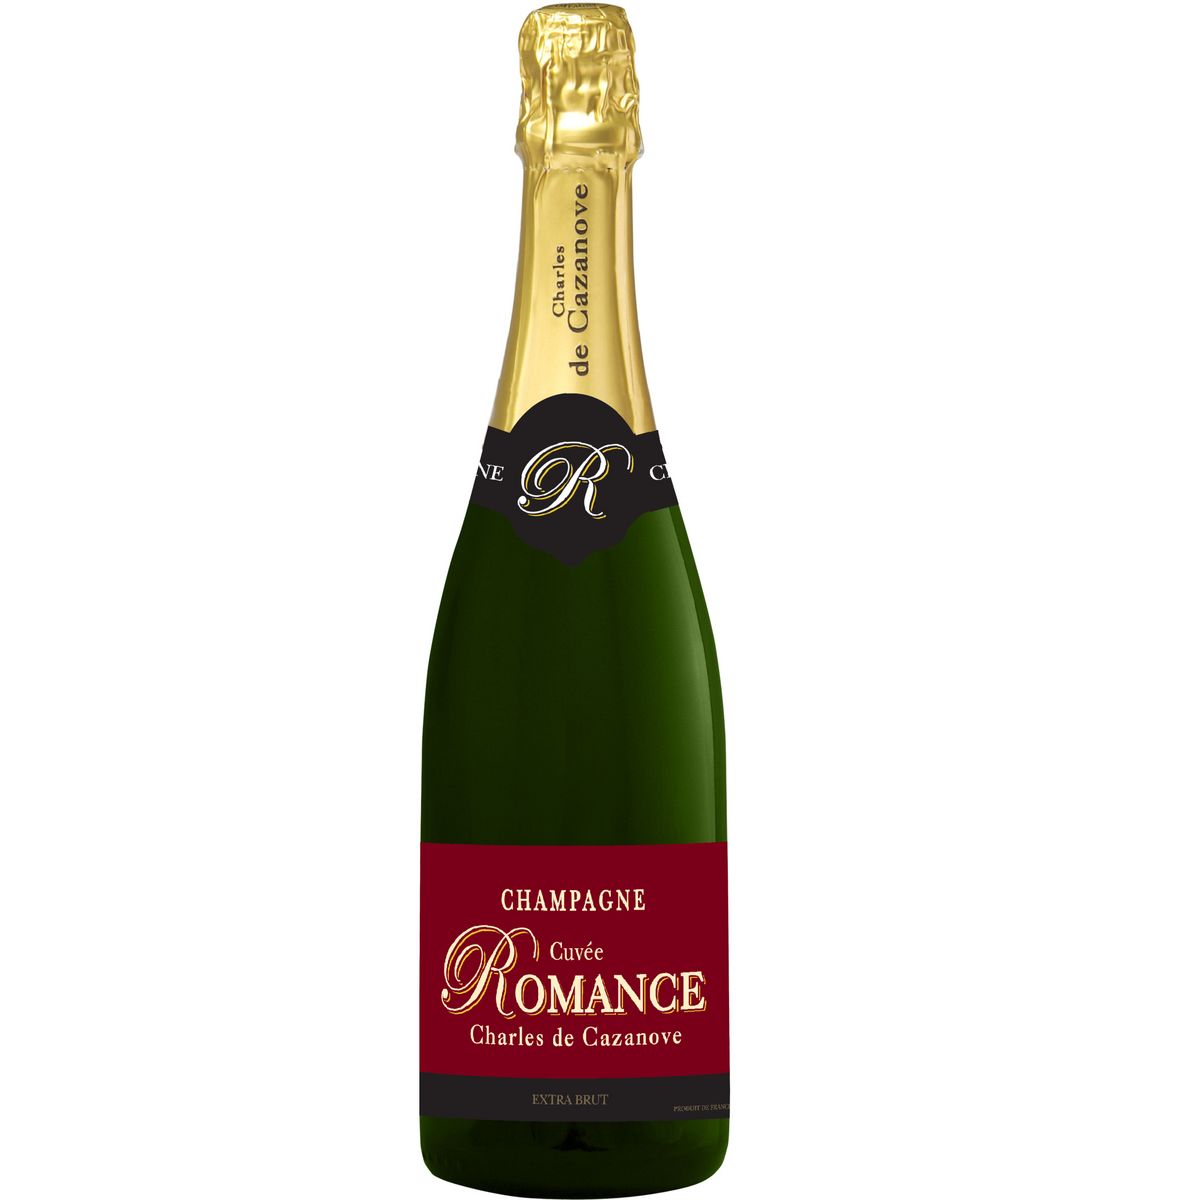 CHARLES DE CAZANOVE AOP Champagne cuvée Romance extra brut 75cl